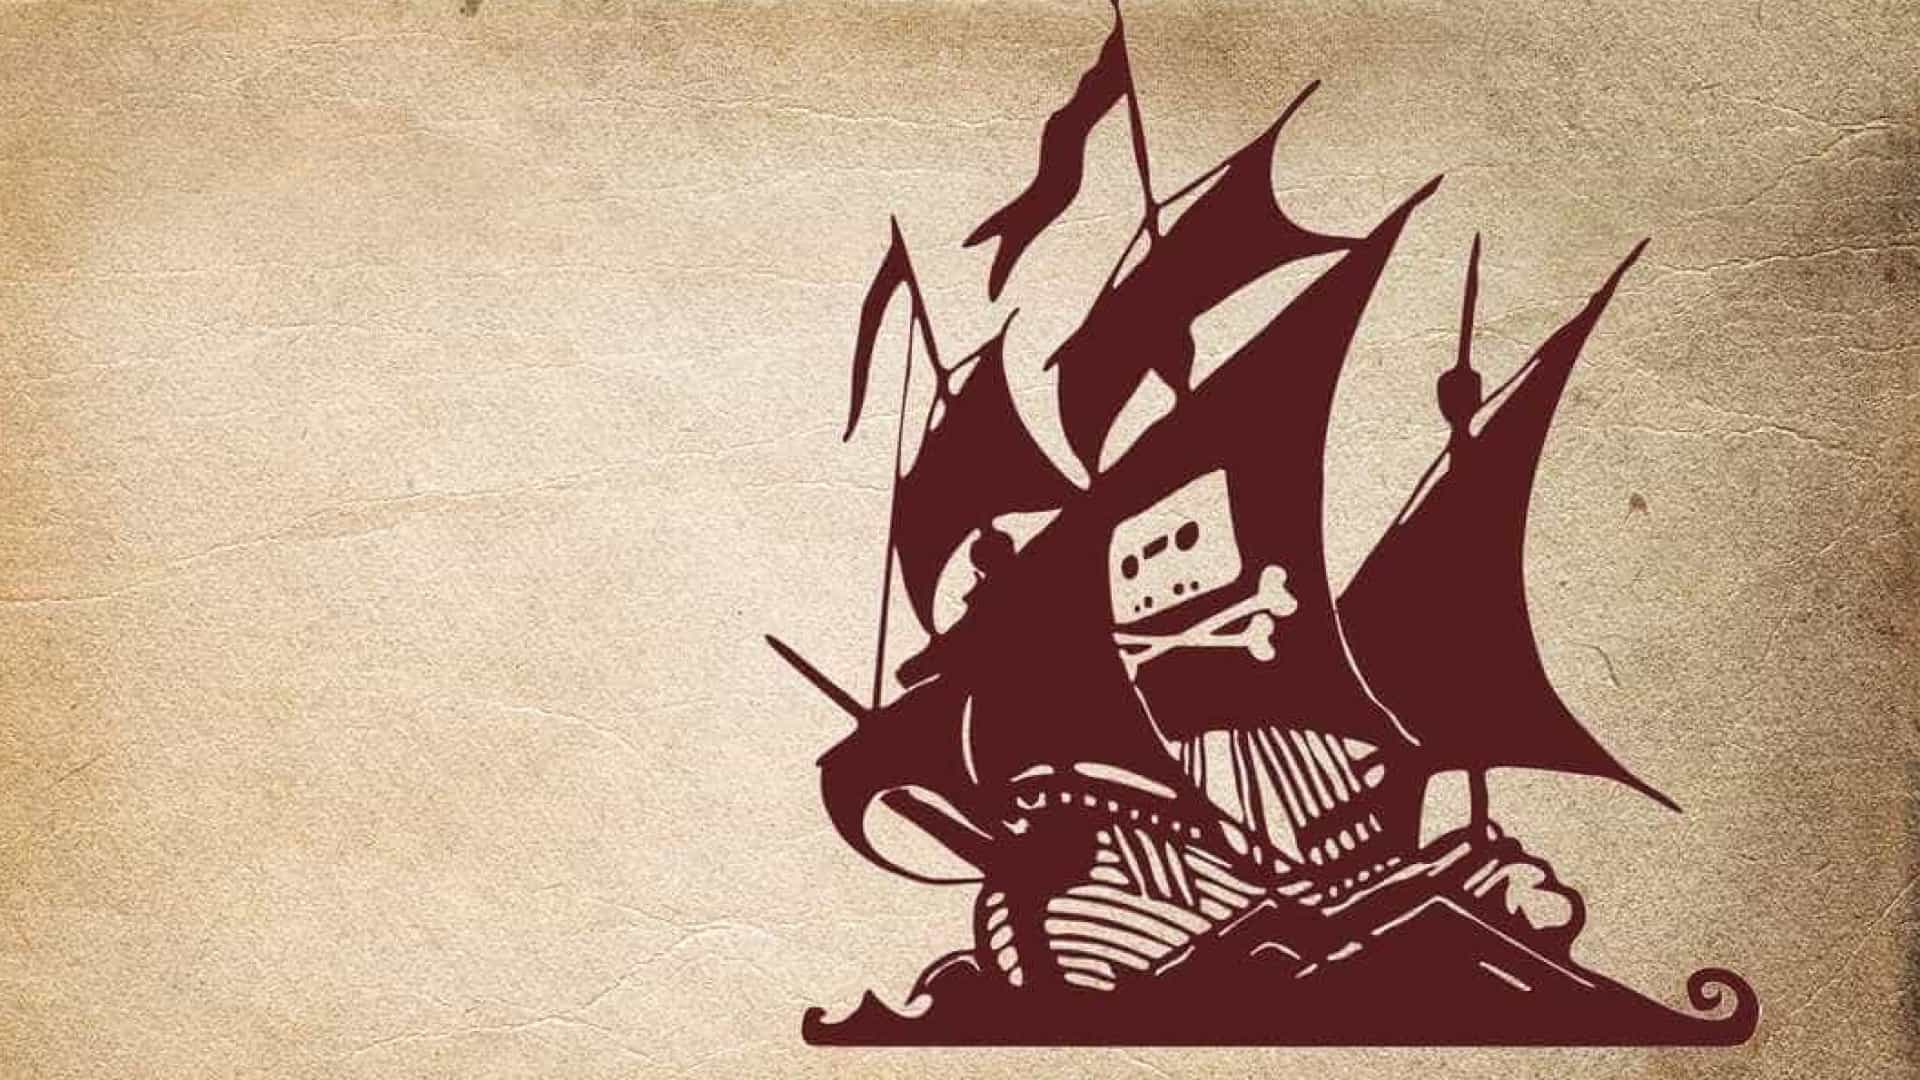 História do The Pirate Bay vai virar série de TV e quem sabe até filme -  Canaltech